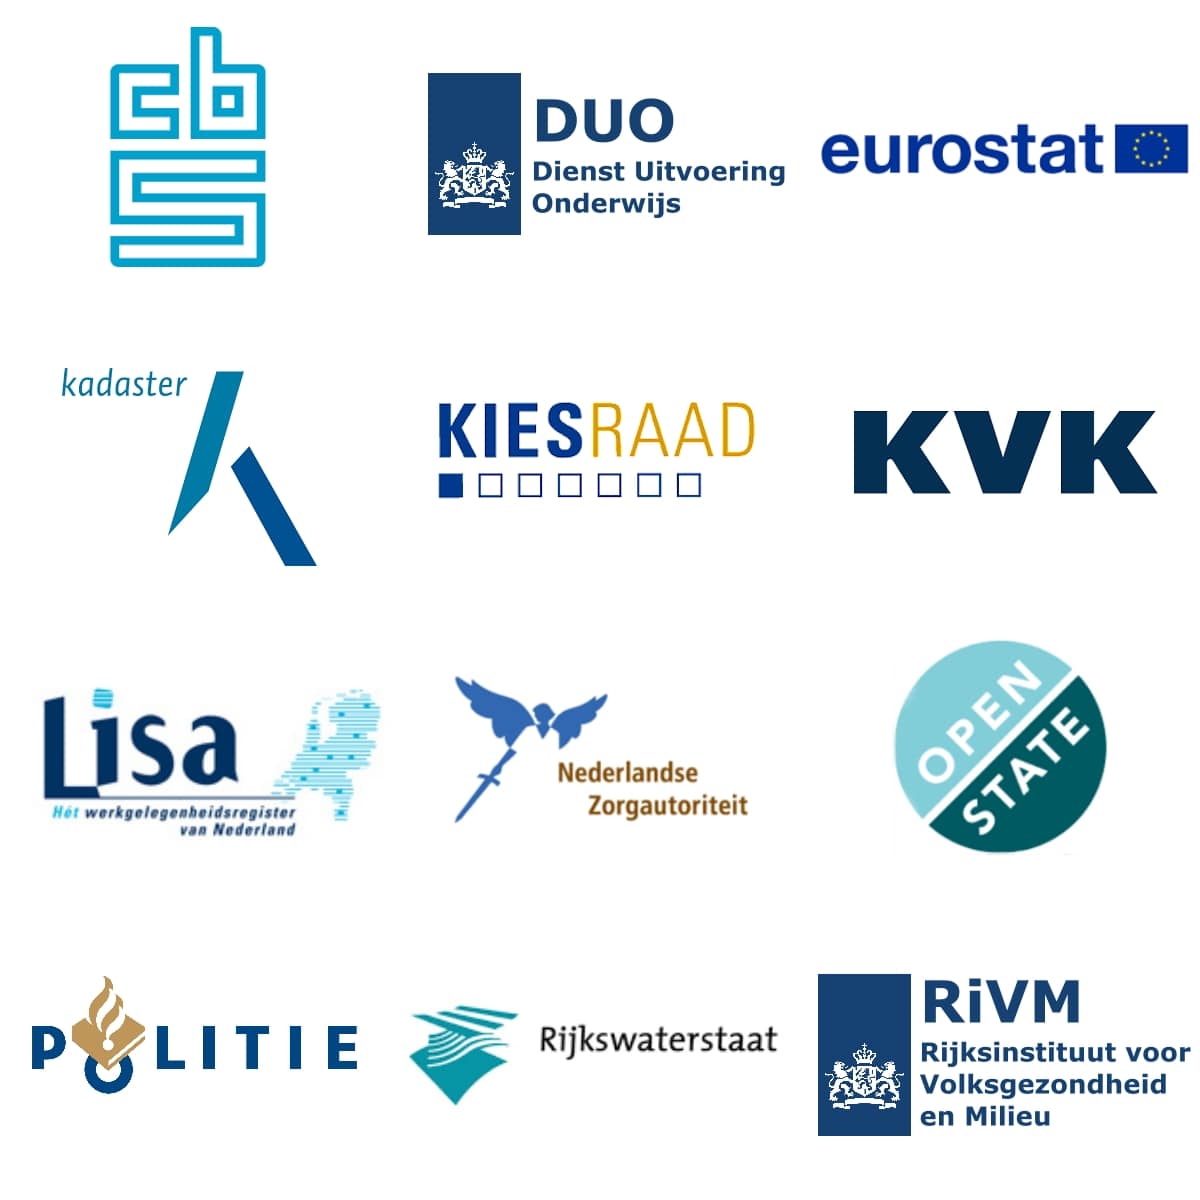 Logo's van 9 belangrijke leveranciers van open data: CBS, DUO, eurostat, het Kadaster, de Kiesraad, KVK, Lisa, Nederlandse zorgautoriteit, Open State, Politie, Rijkswaterstaat en RIVM.